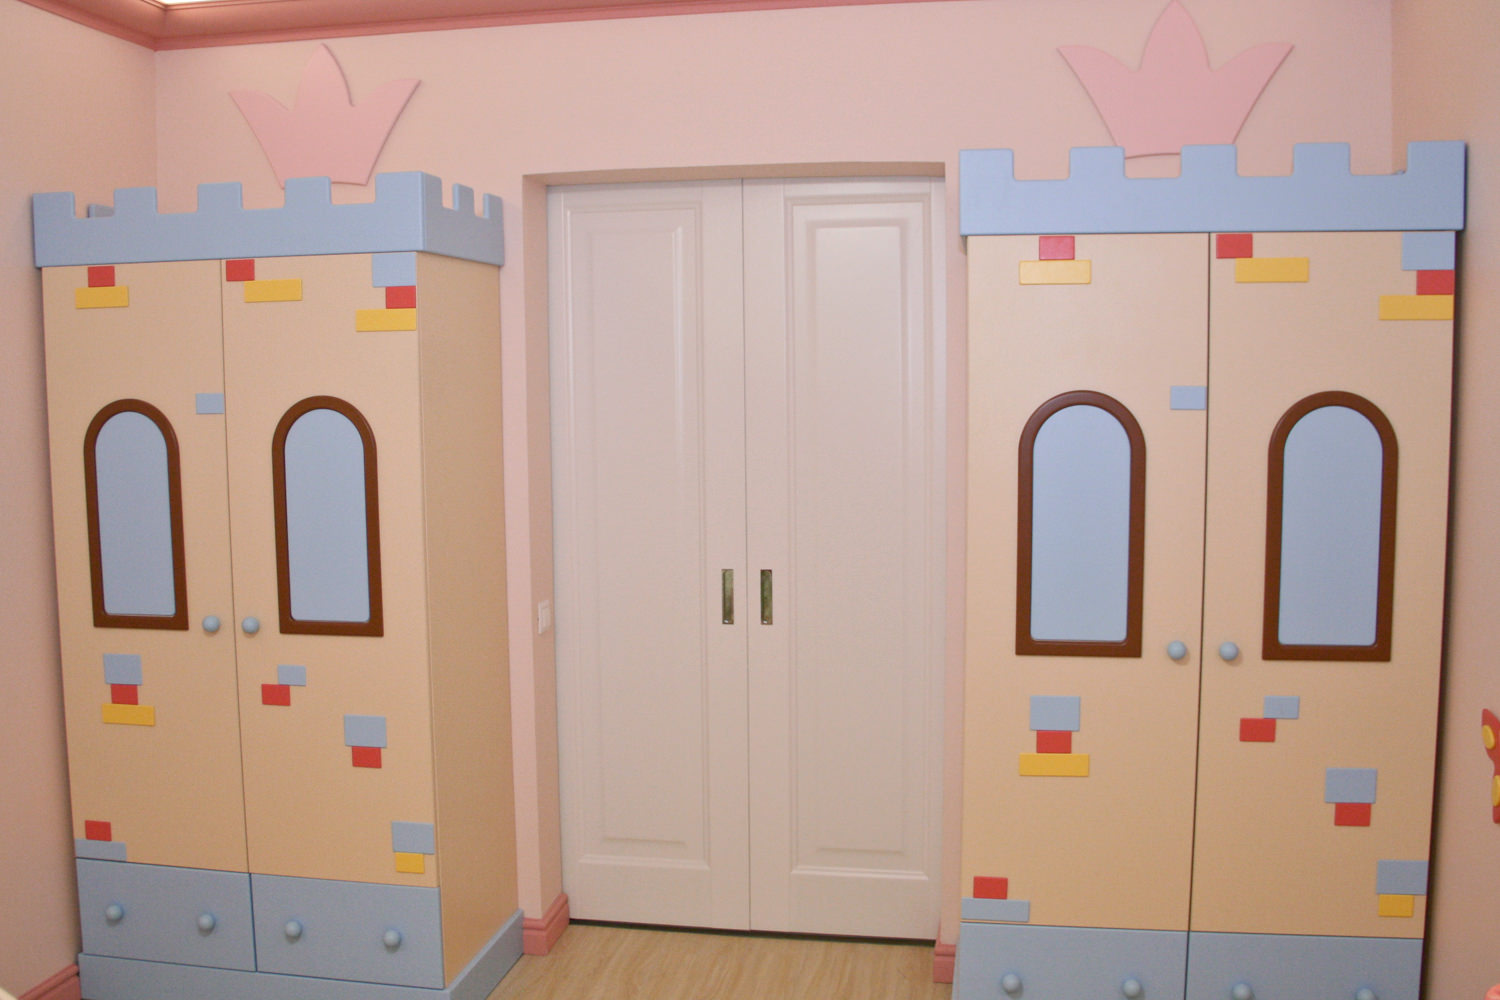 Здесь живут настоящие принцессы – детская мебель, кровати, для девочек в розовом интерьере